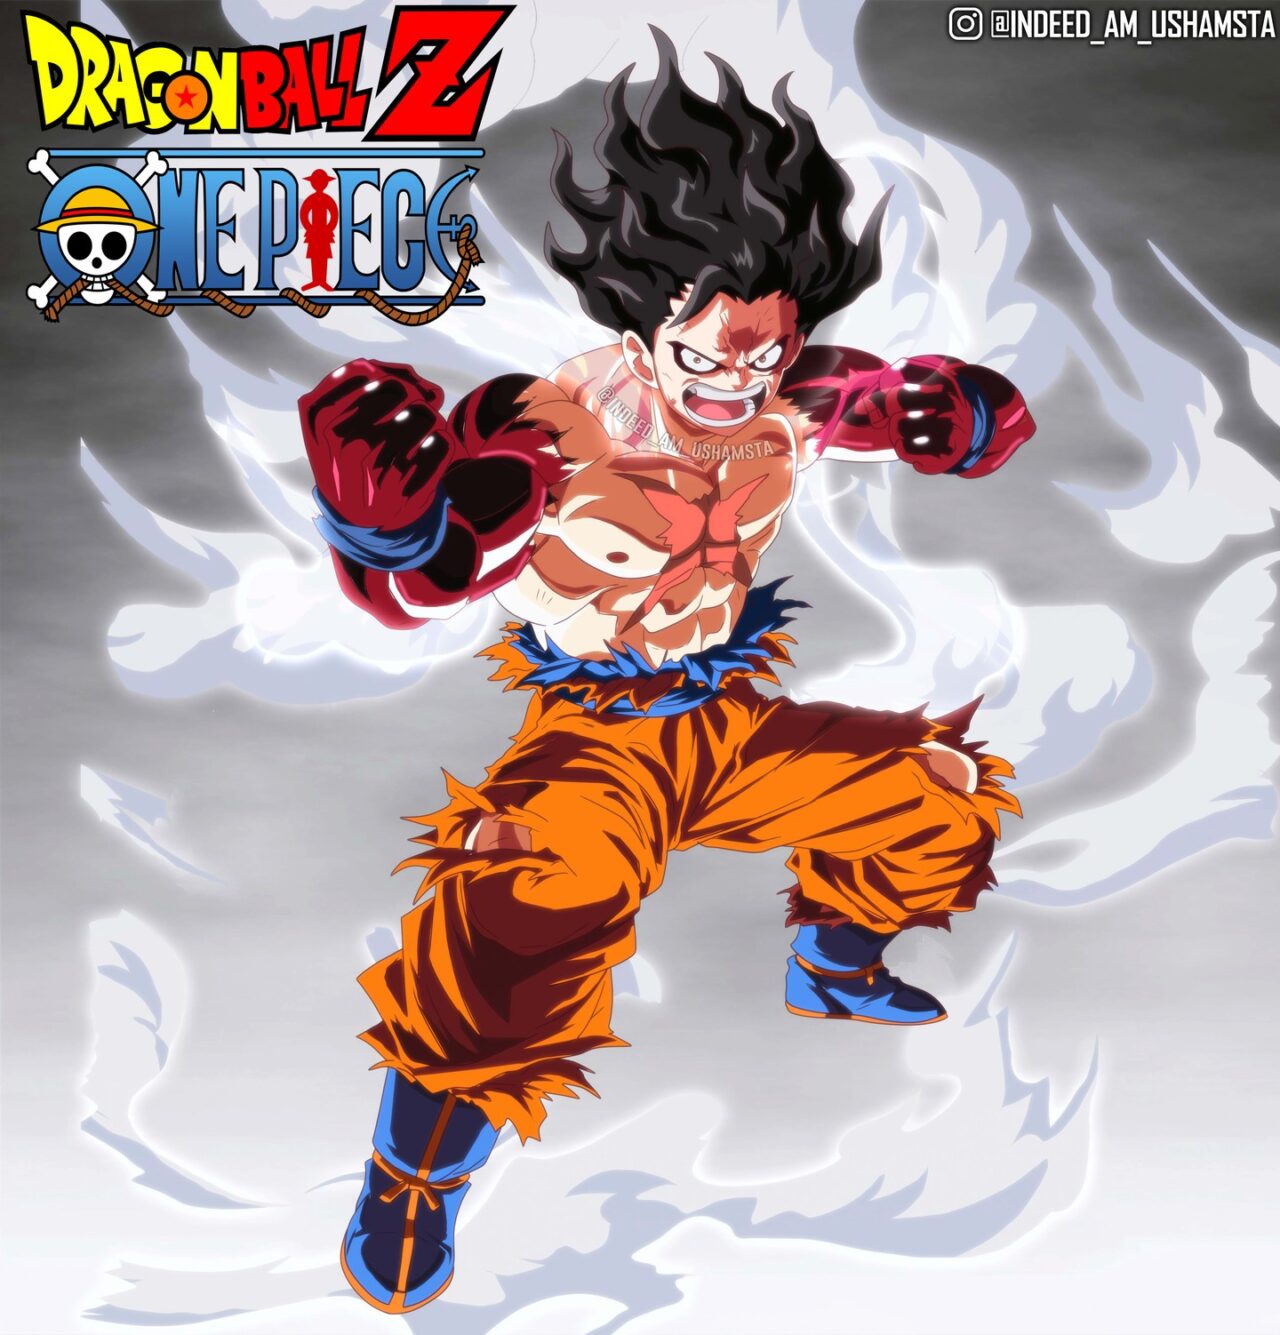 Artista fez um épico crossover entre Luffy de One Piece e Goku de Dragon Ball